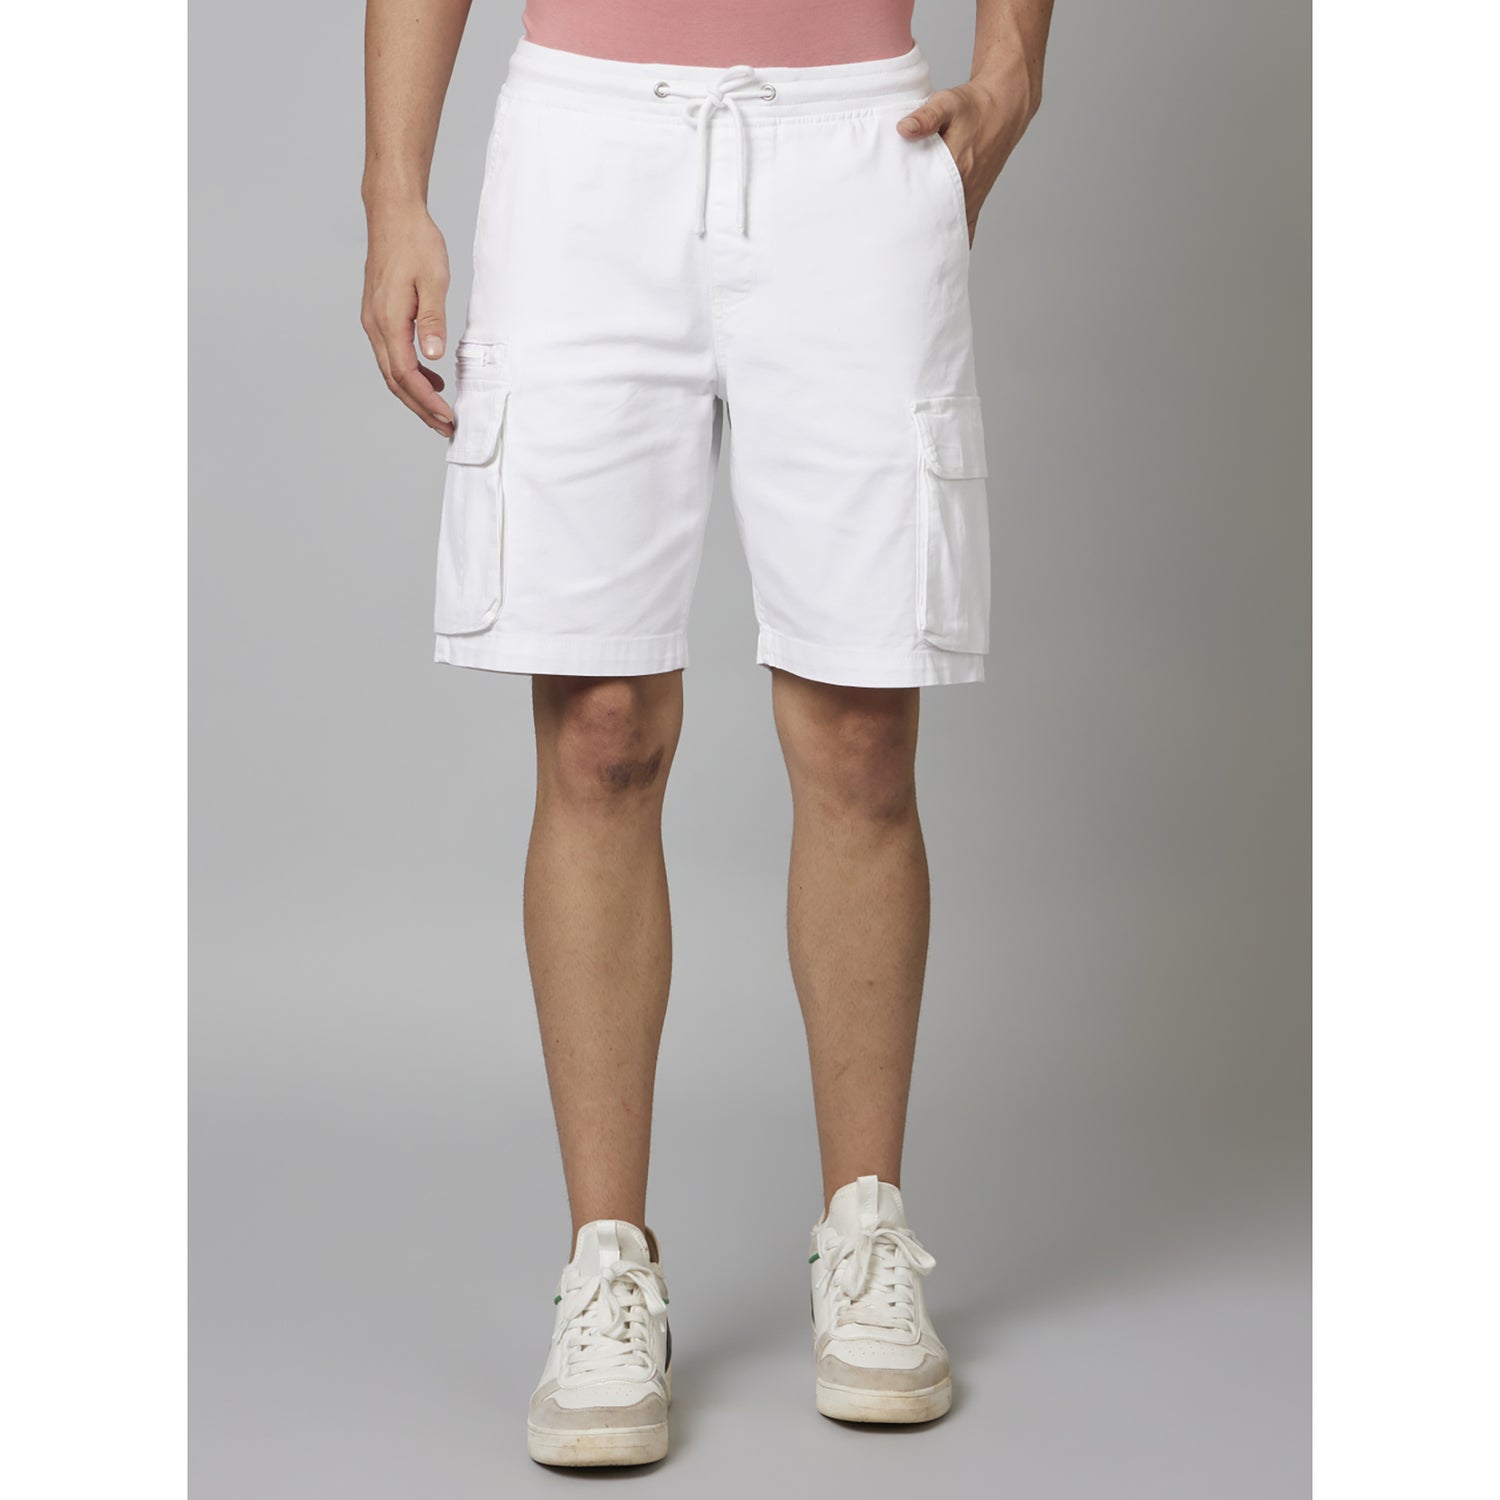 White Solid Cotton Blend Shorts (DORIBM)